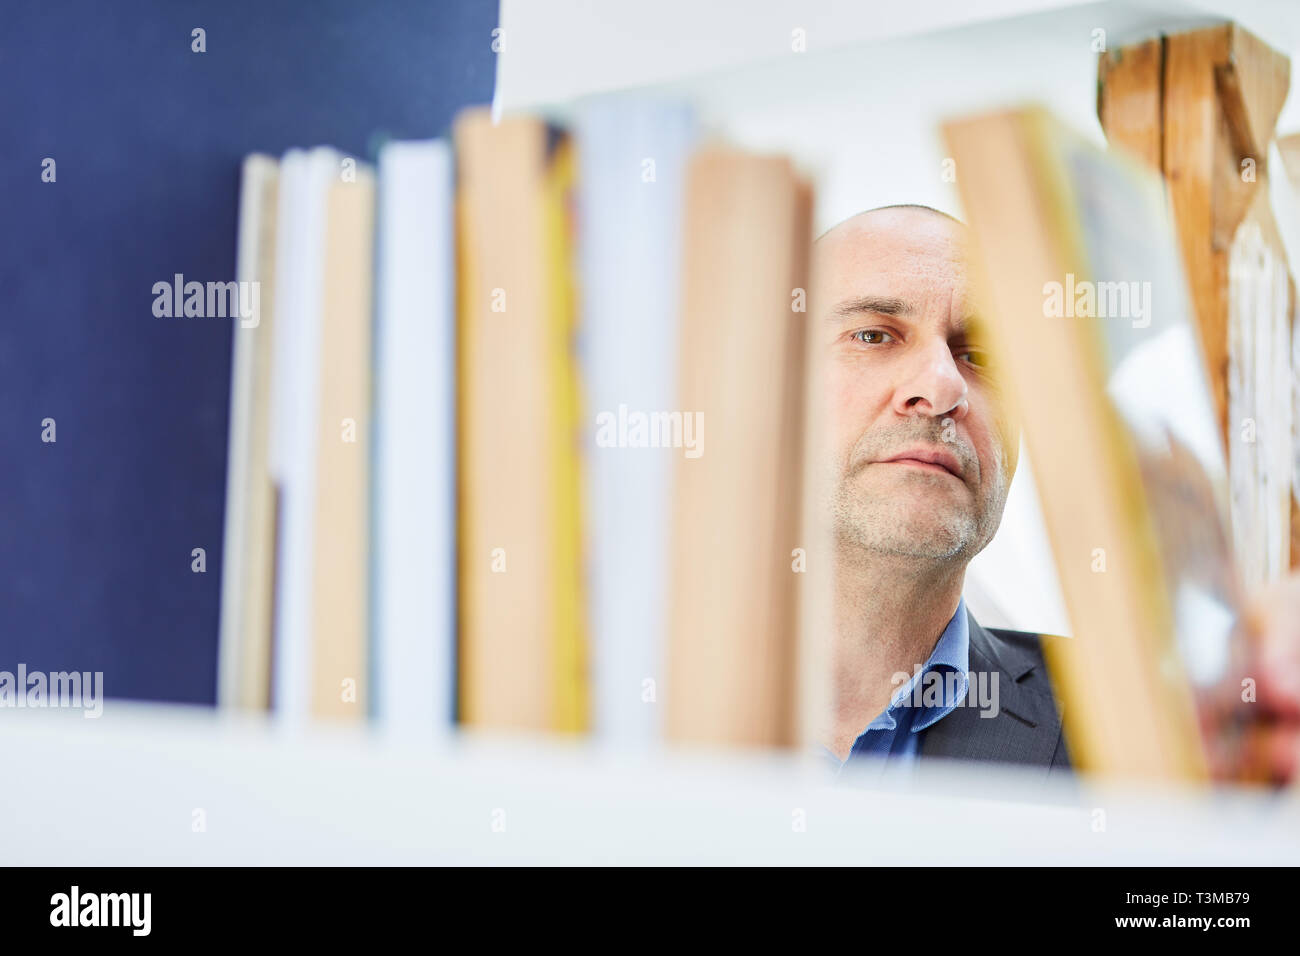 L'uomo come lettore o ordinamento bibliotecario libri o cercando un libro sullo scaffale Foto Stock